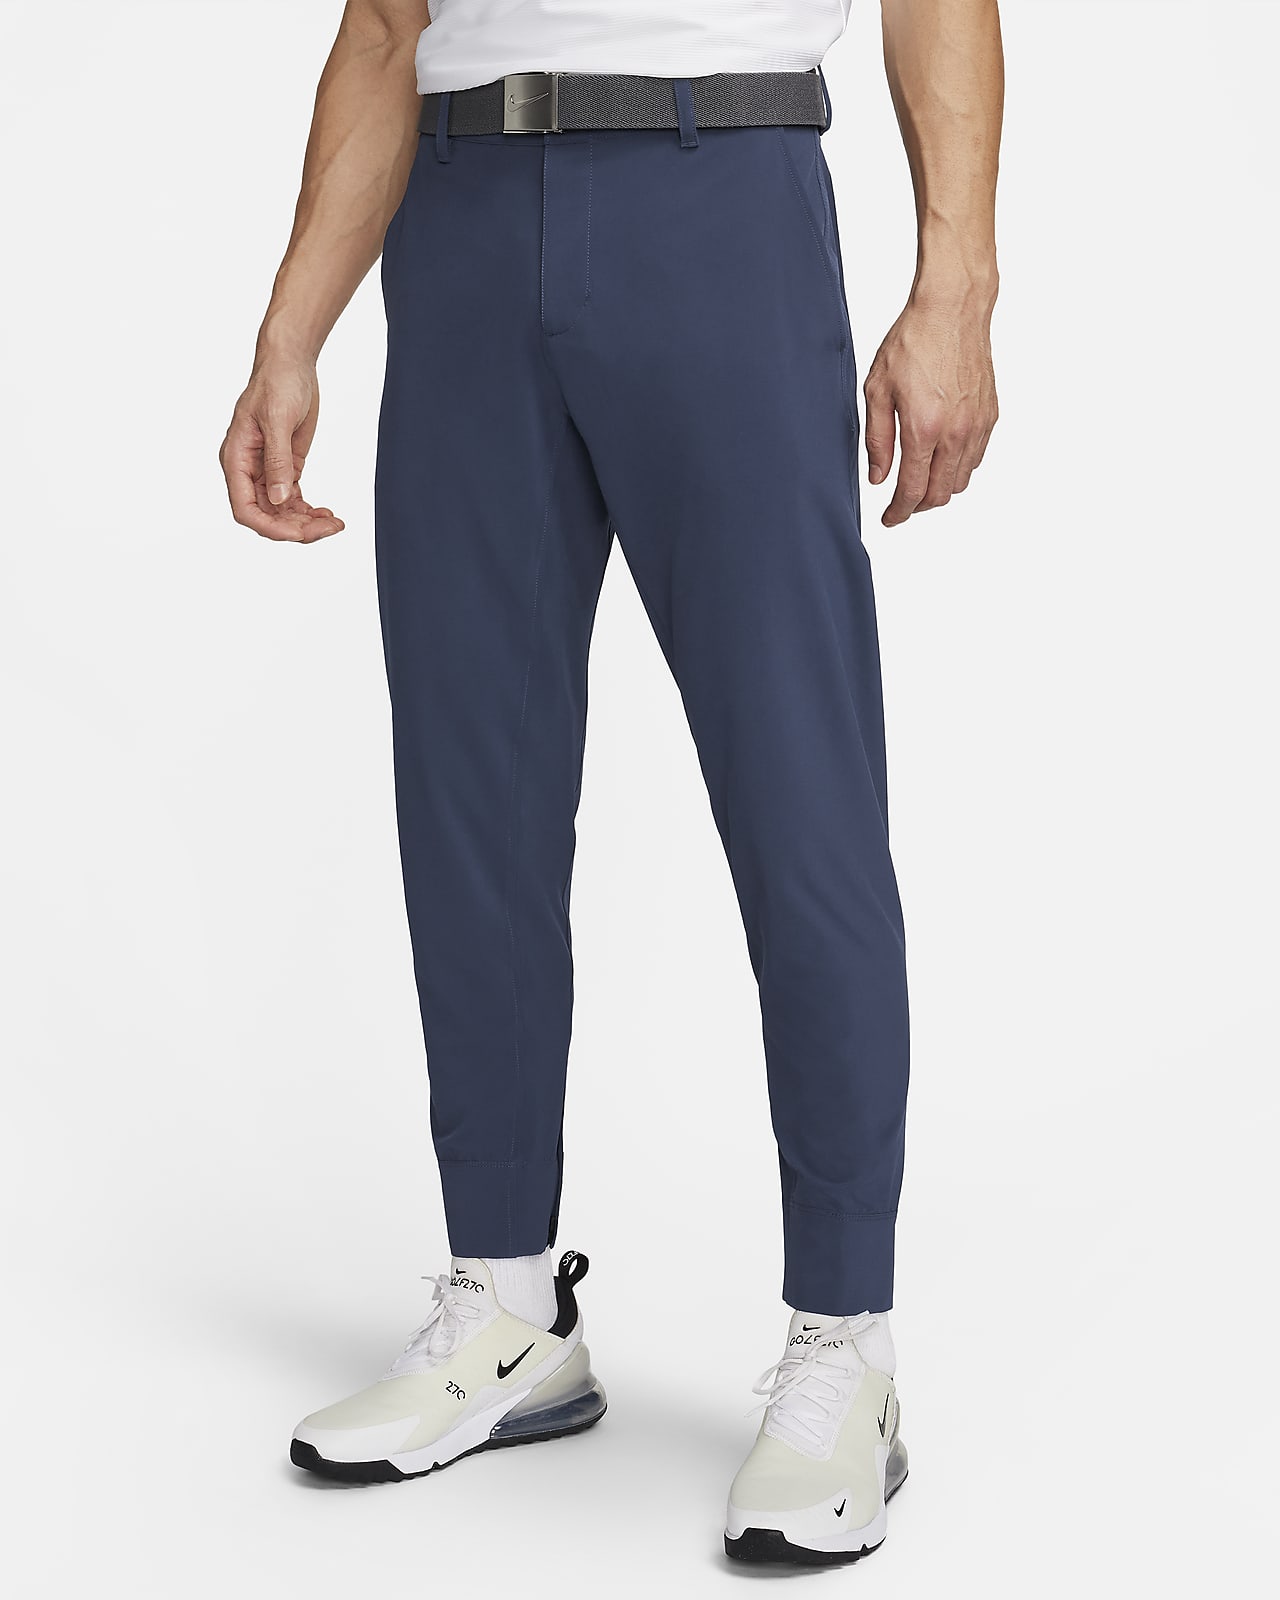 Ανδρικό παντελόνι φόρμας για γκολφ Nike Tour Repel